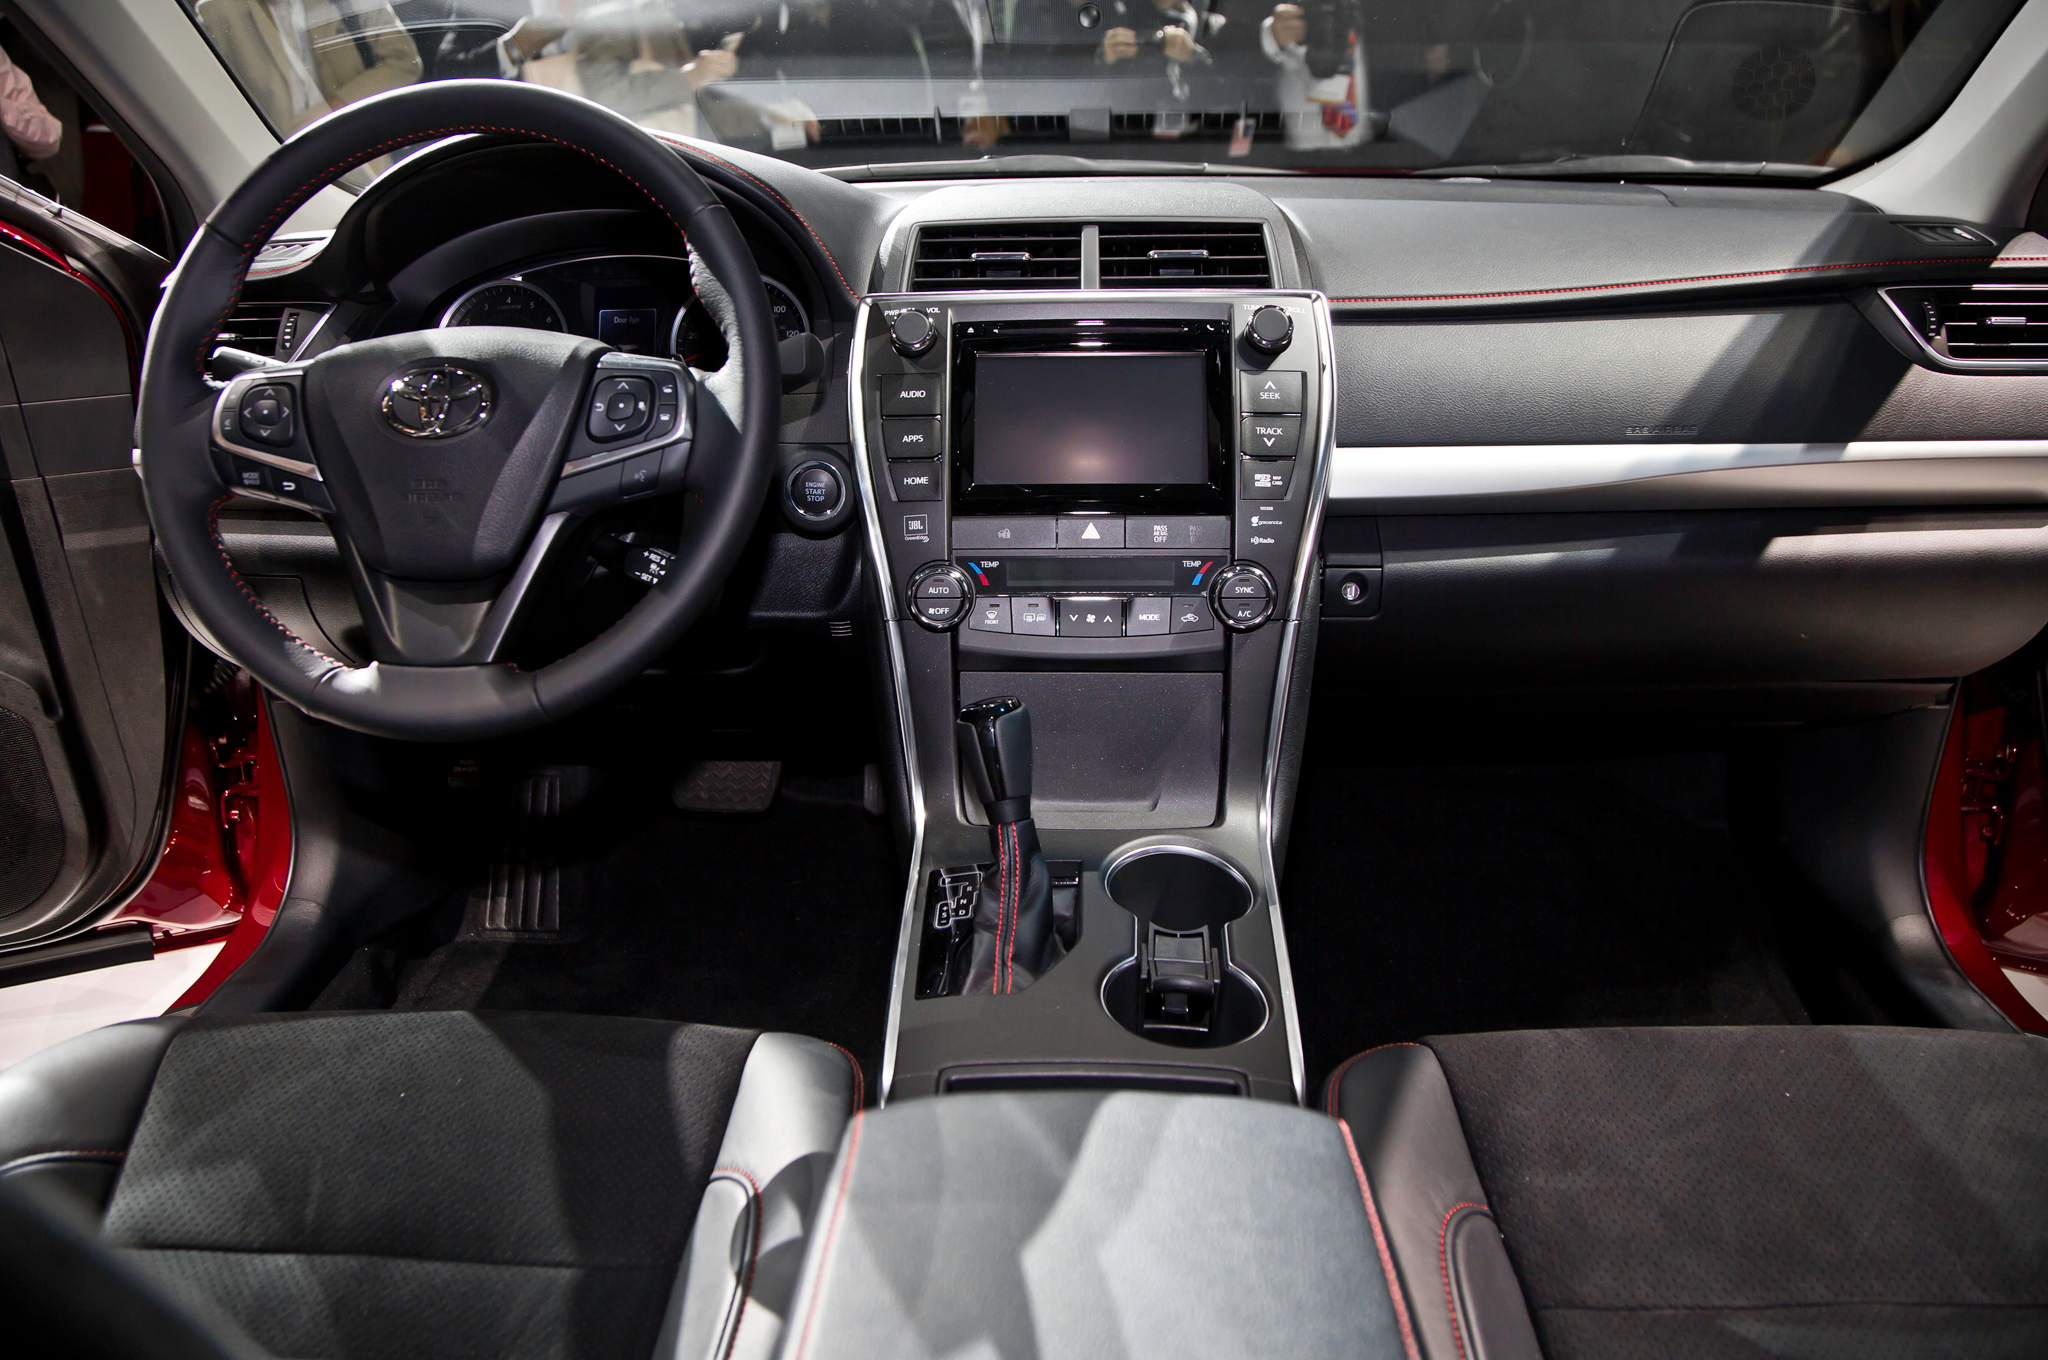 Hệ thống điều khiển của Toyota Camry được cho là đơn giản và thân thiện với người sử dụng hơn khi so sánh xe ô tô  